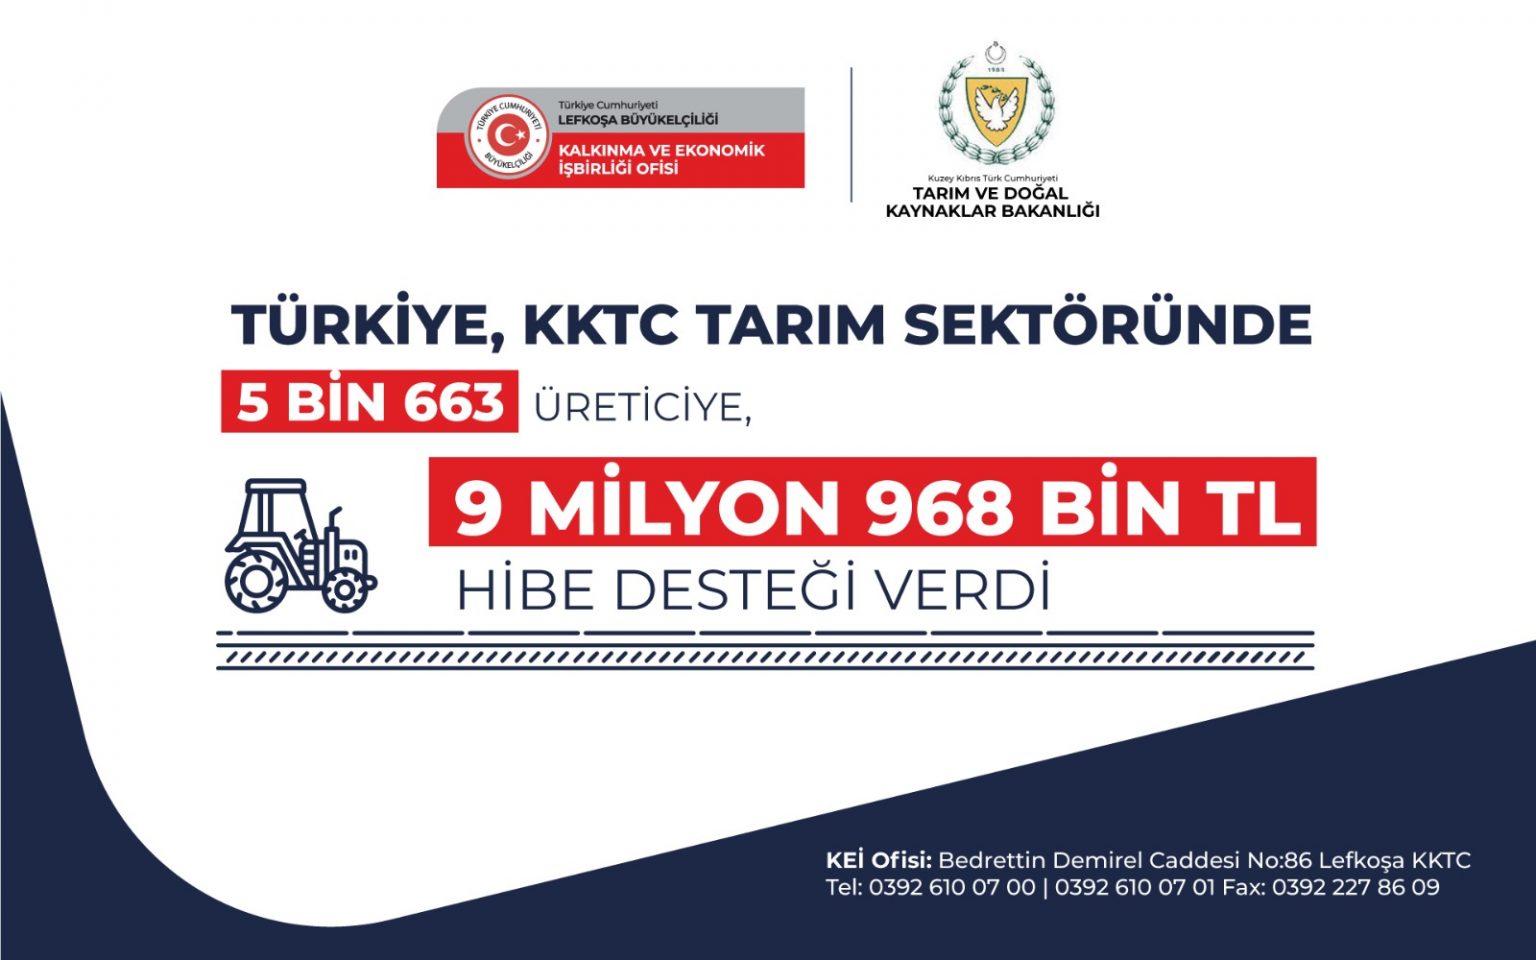 Türkiye, KKTC tarım sektöründe 5 Bin 663 üreticiye, 9 Milyon 968 Bin TL hibe desteği verdi